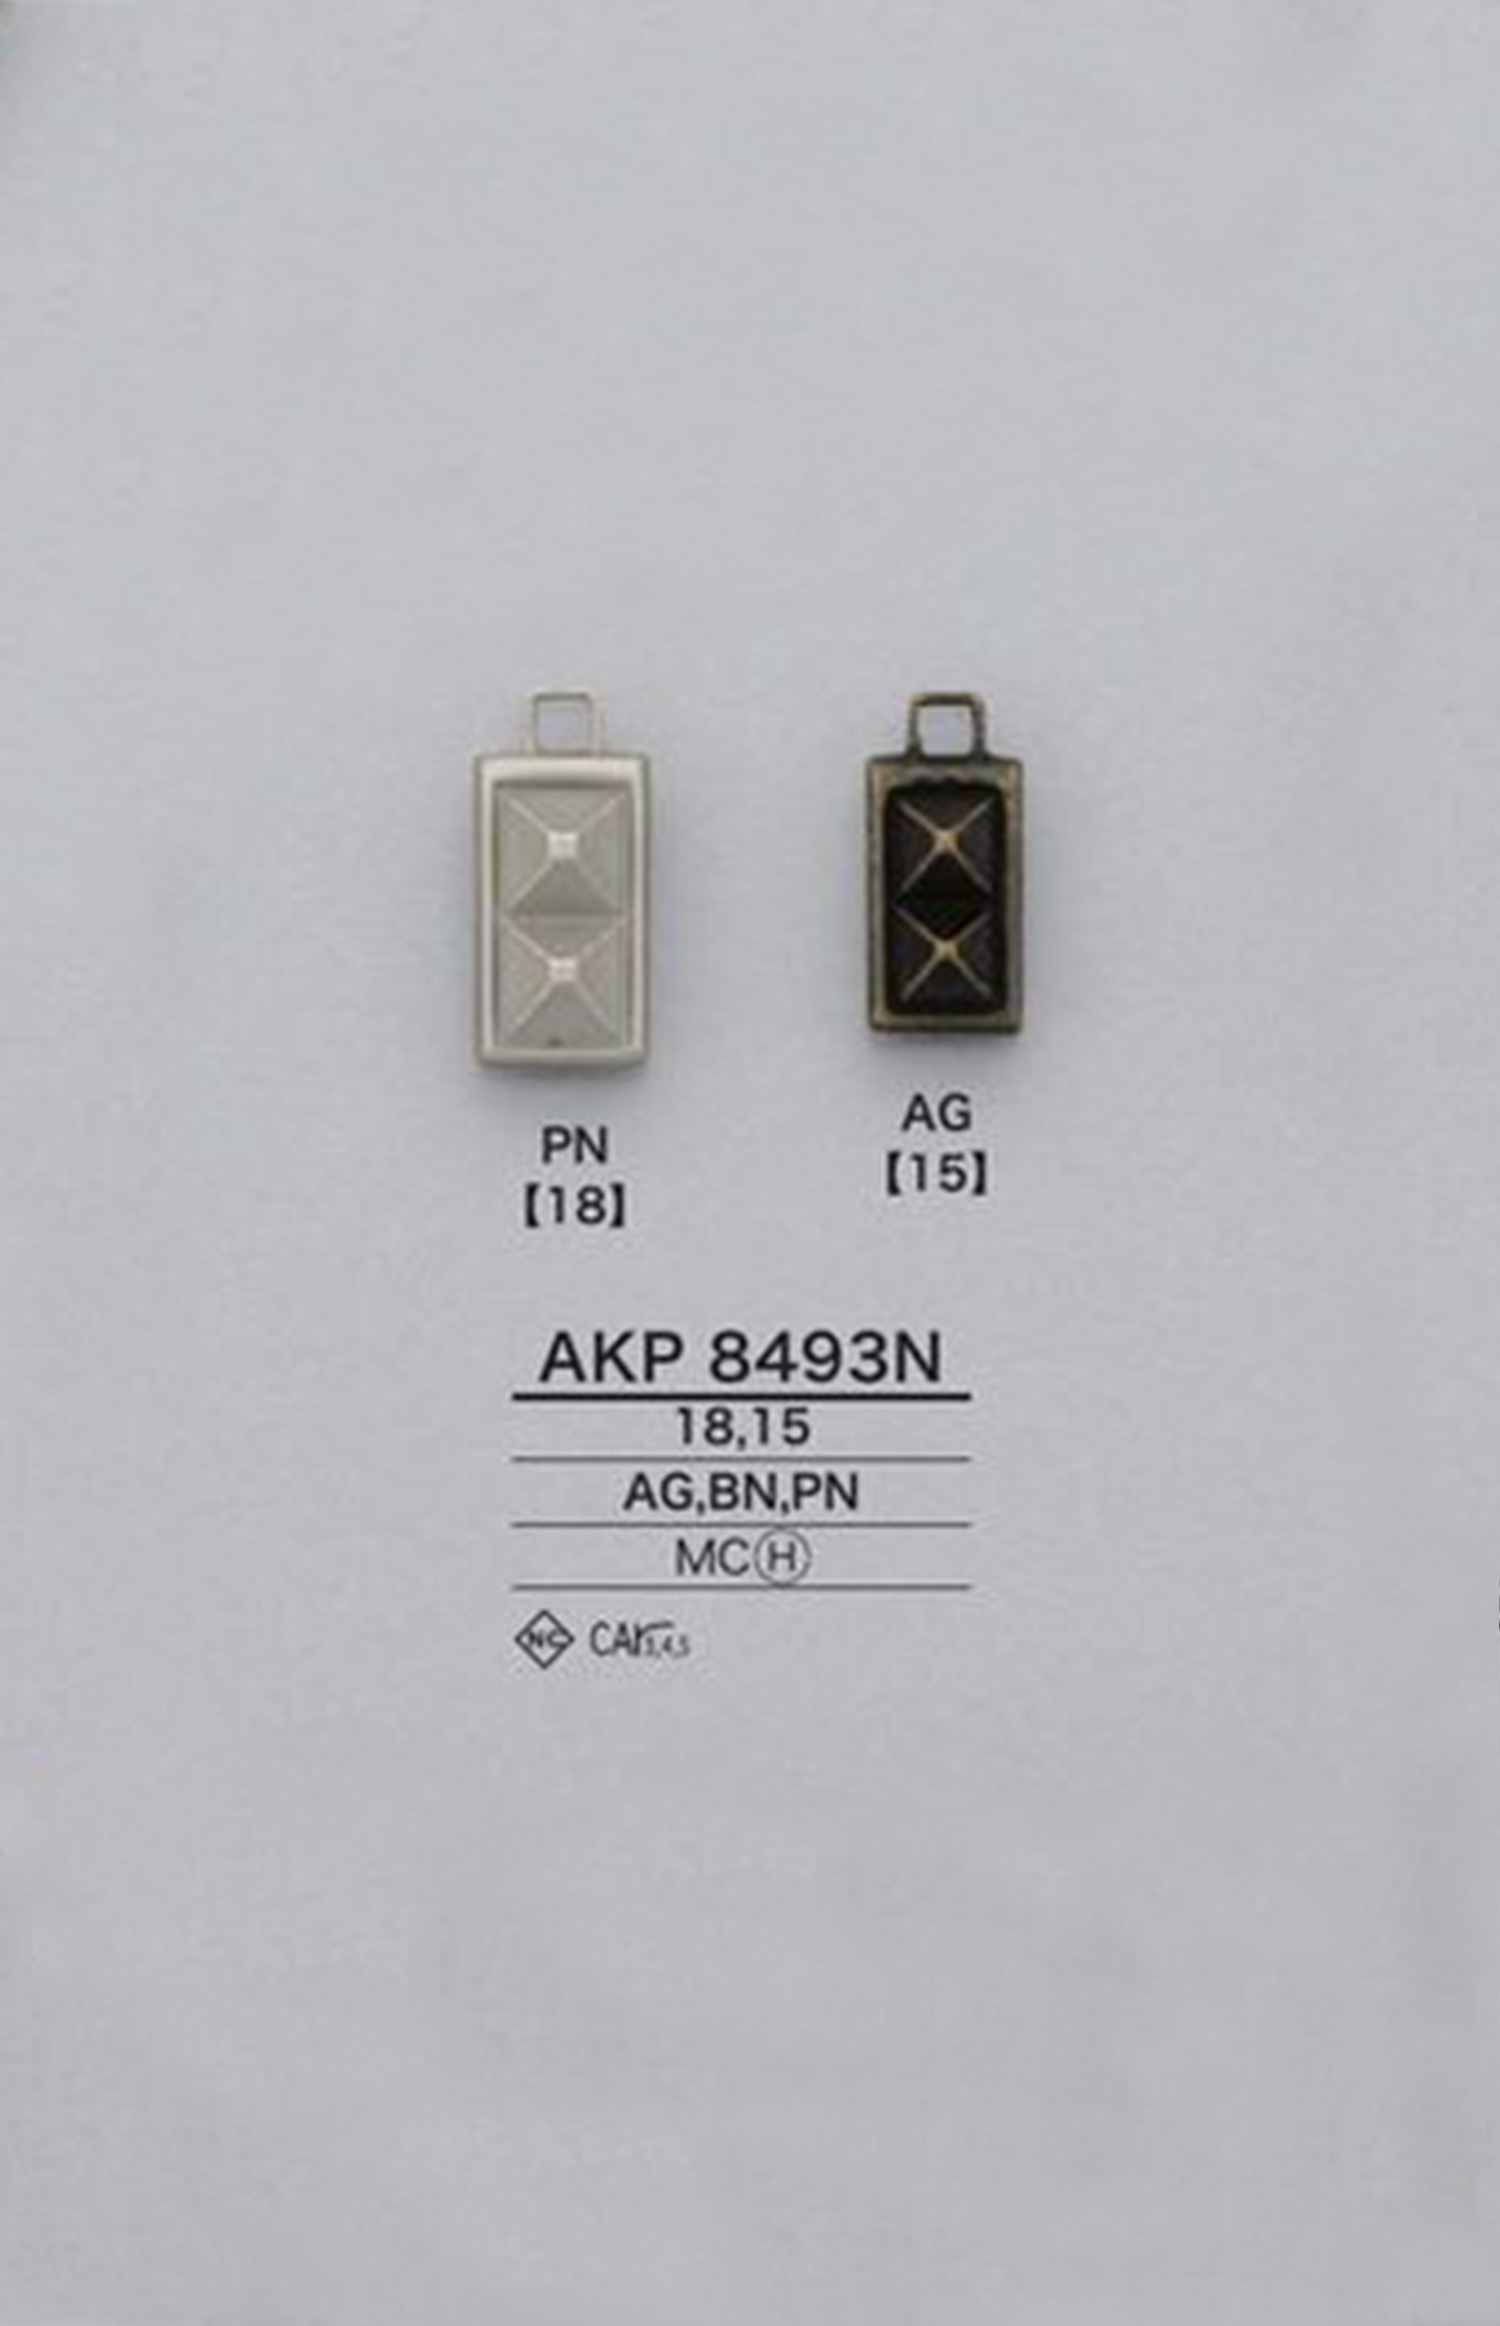 AKP8493N Studs Zipper Point (Pull Tab) IRIS